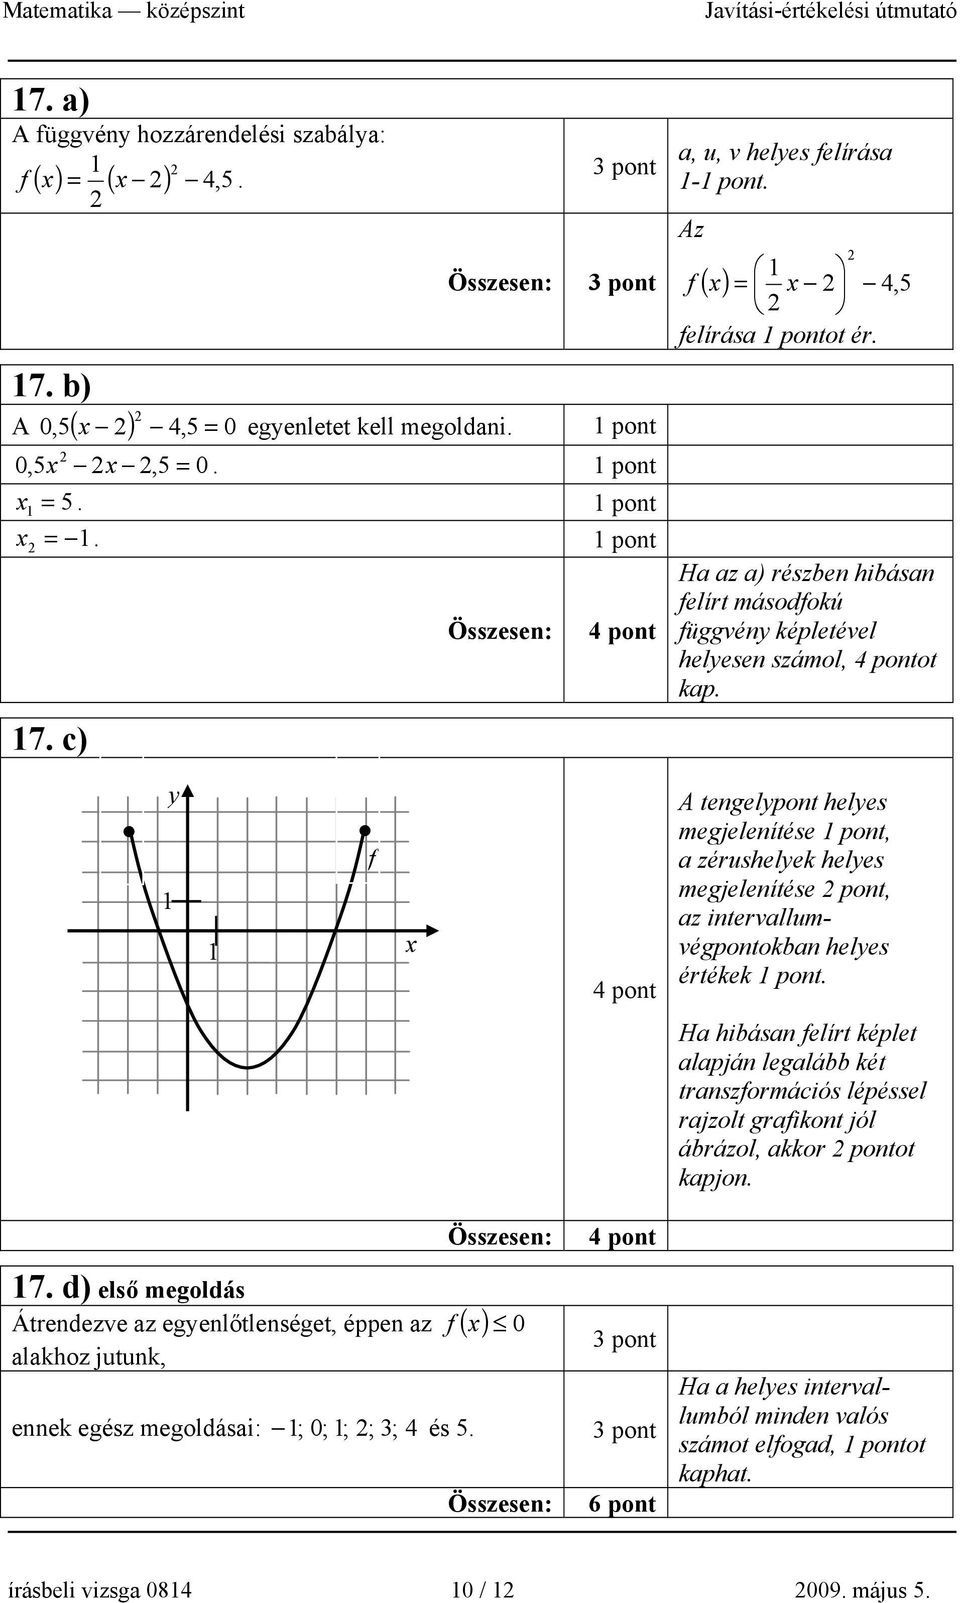 f 1 1 x 4 pont 4 pont A tengelypont helyes megjelenítése, a zérushelyek helyes megjelenítése pont, az intervallumvégpontokban helyes értékek.